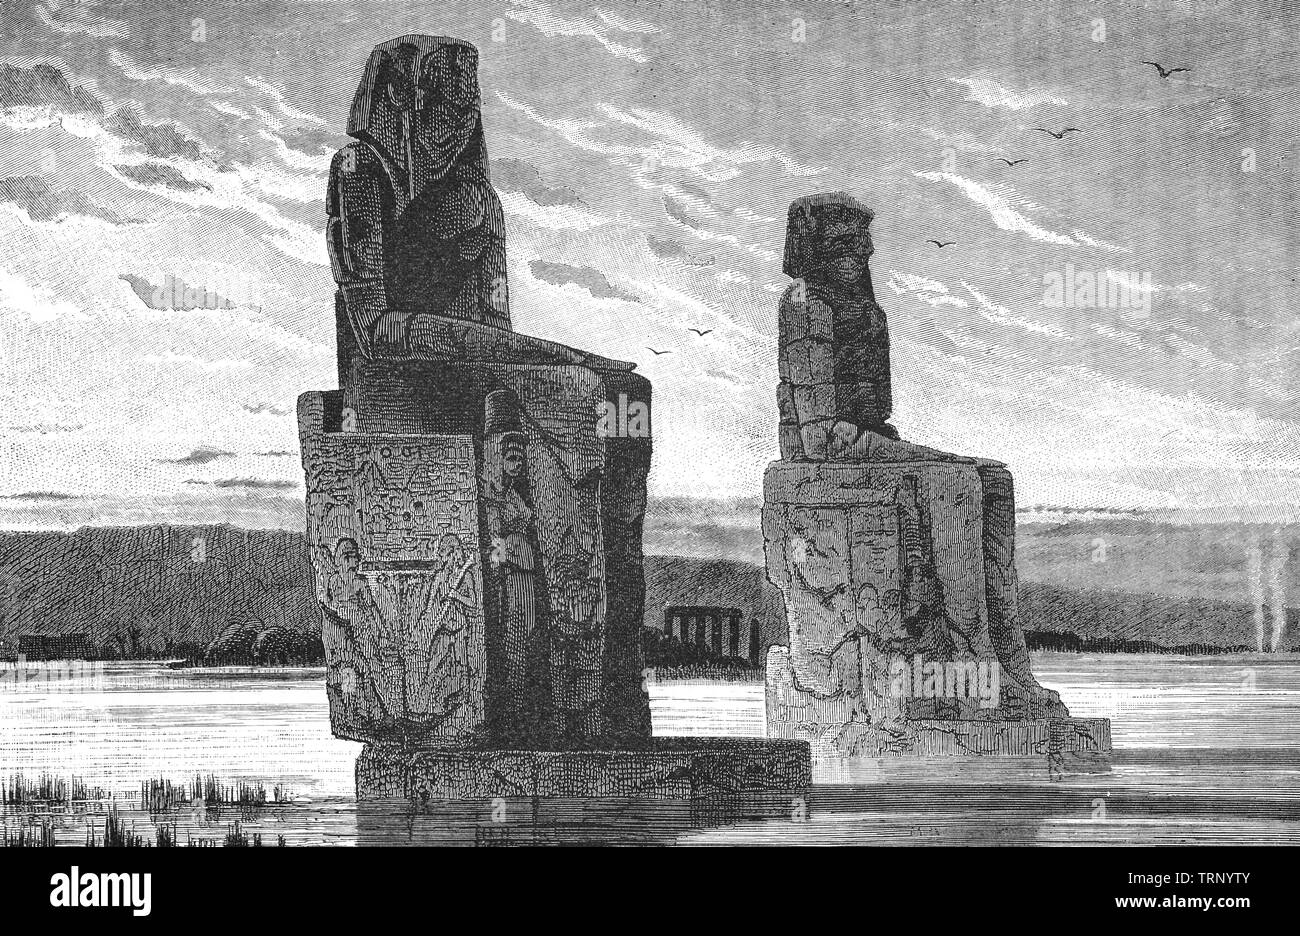 Les colosses de Memnon sont deux énormes statues de pierre qui ont résisté à la nécropole thébaine, située à l'ouest du Nil à partir de la ville moderne de Louxor. Les deux statues représentent Amenhotep III (fl. 14e siècle avant J.-C.) dans une position assise, les mains sur ses genoux et son regard vers e la rivière. Deux figures plus courtes sont taillées dans le discours du trône aux côtés de ses jambes : ce sont sa femme et mère Tiye. Mutemwiya Banque D'Images